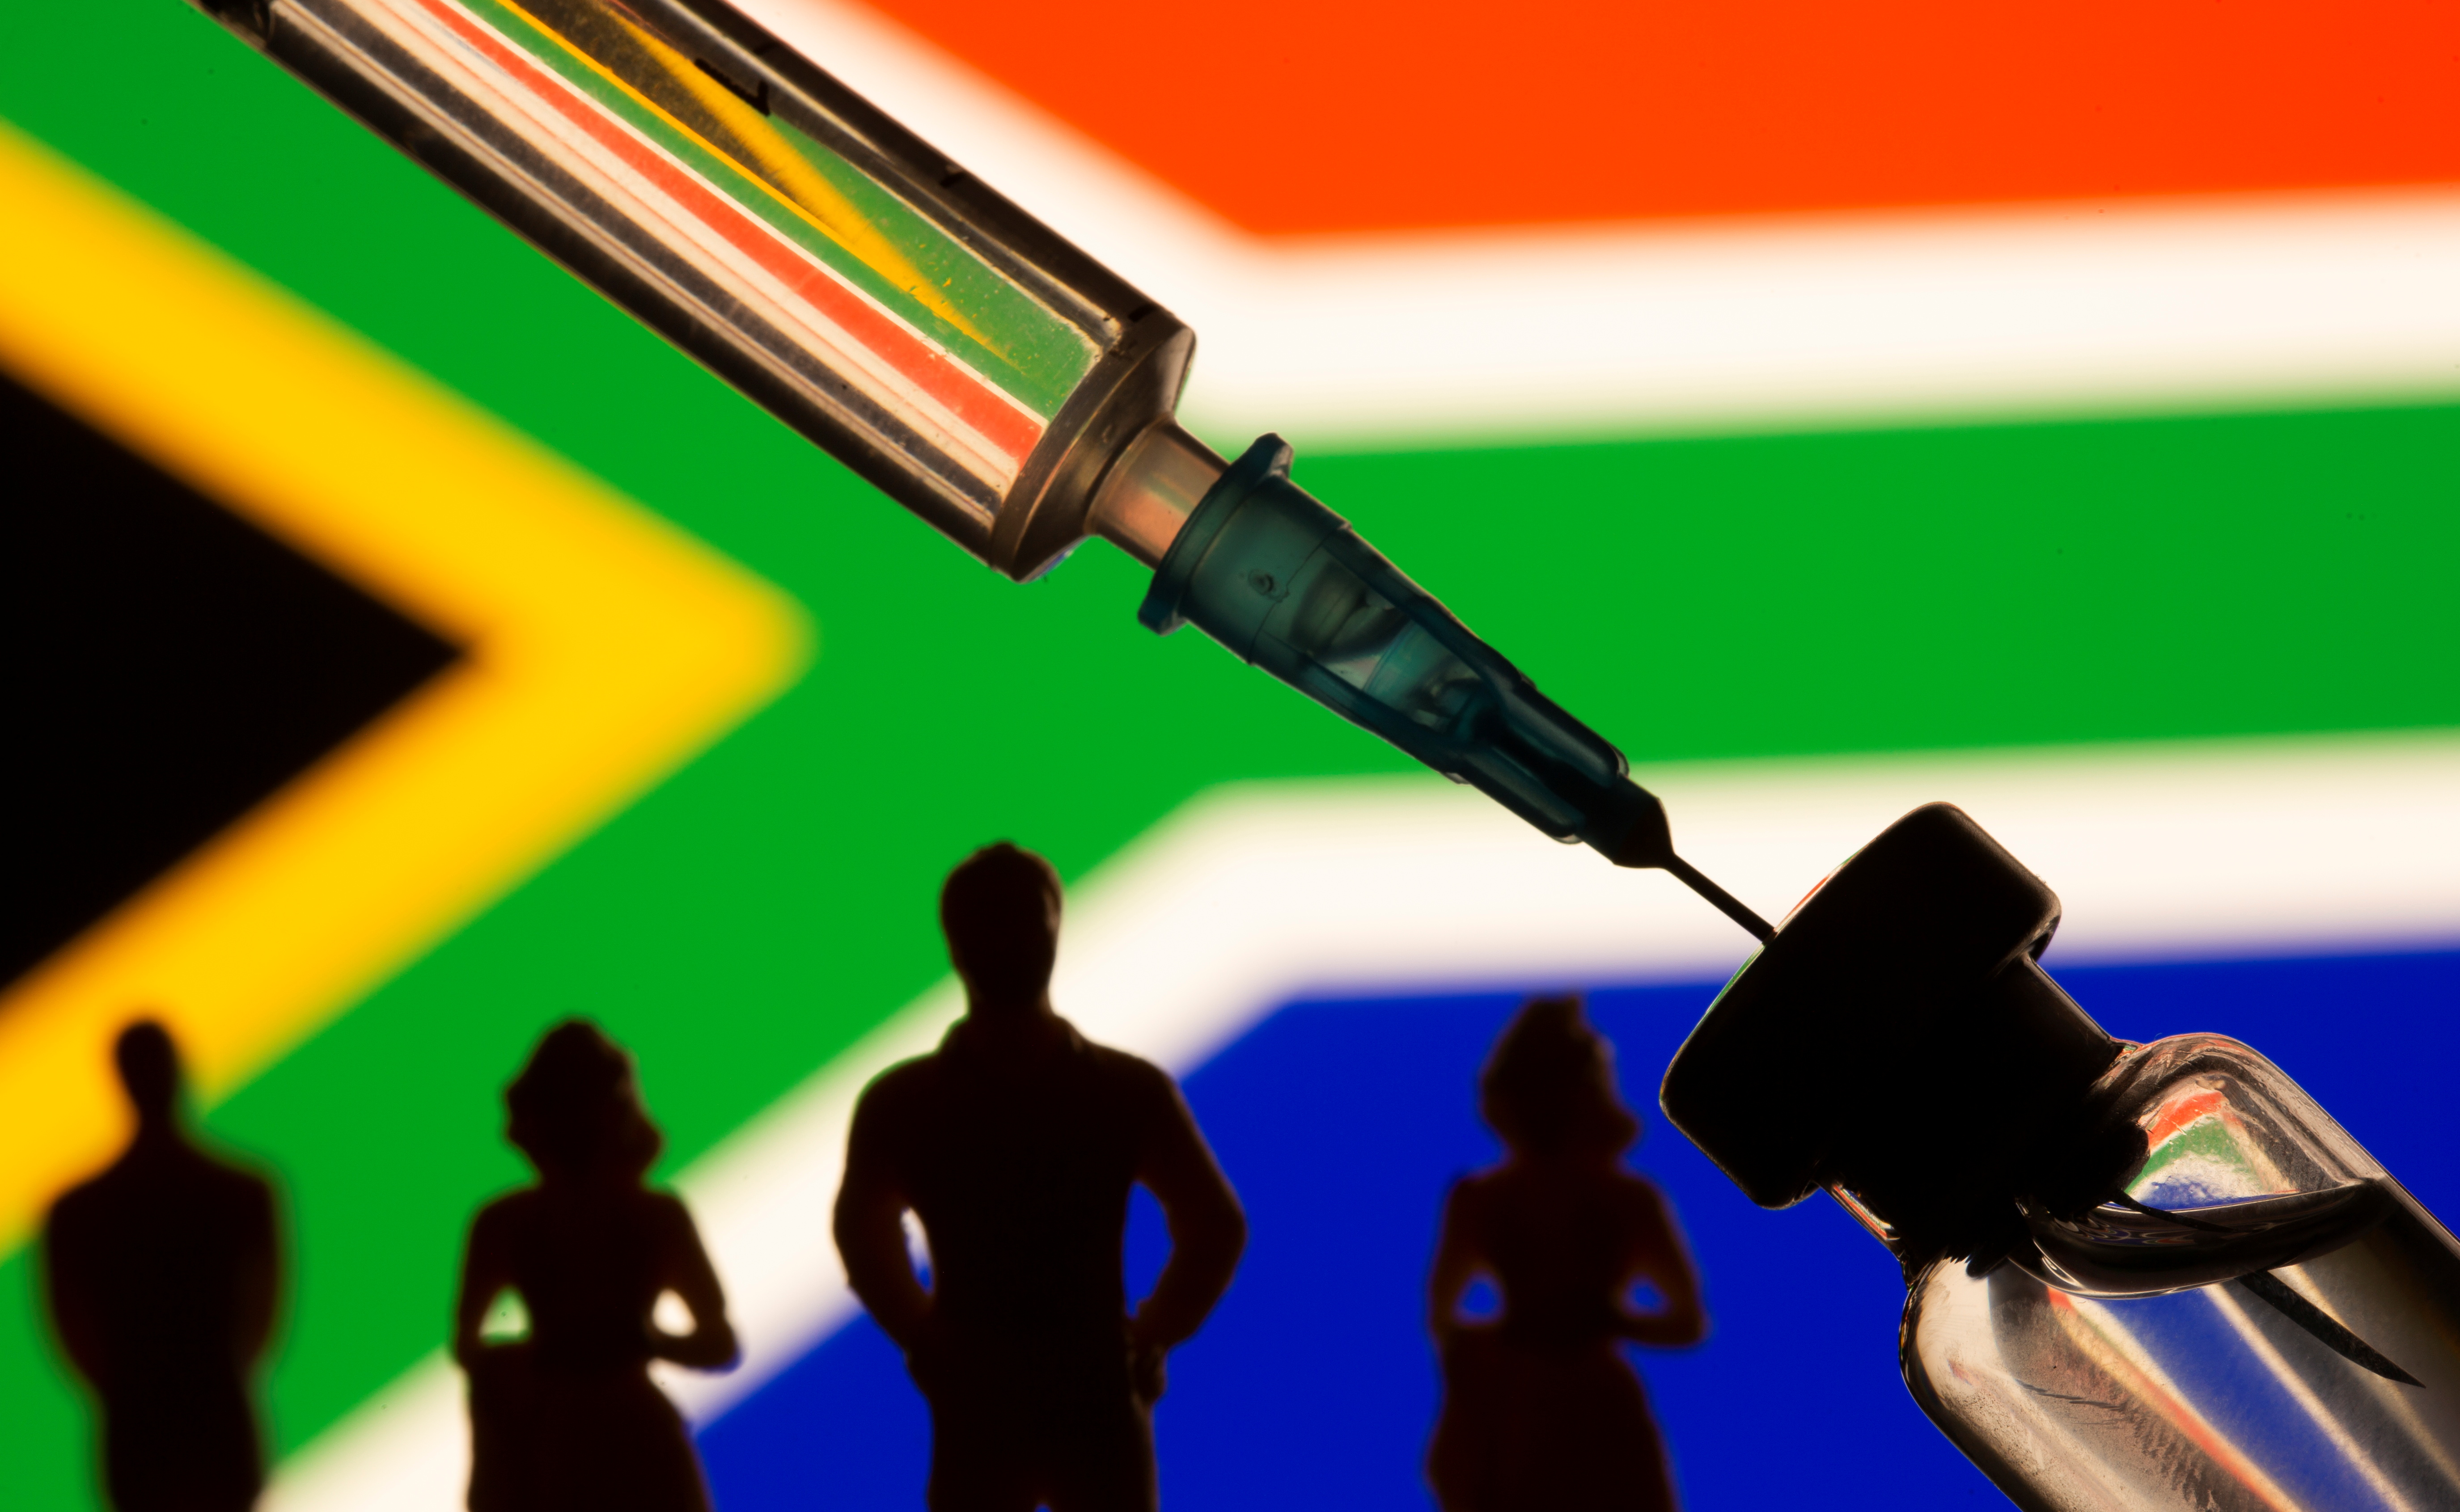 La variante sudafricana demostró tener más resistencia a algunas vacunas - REUTERS/Dado Ruvic/Illustration